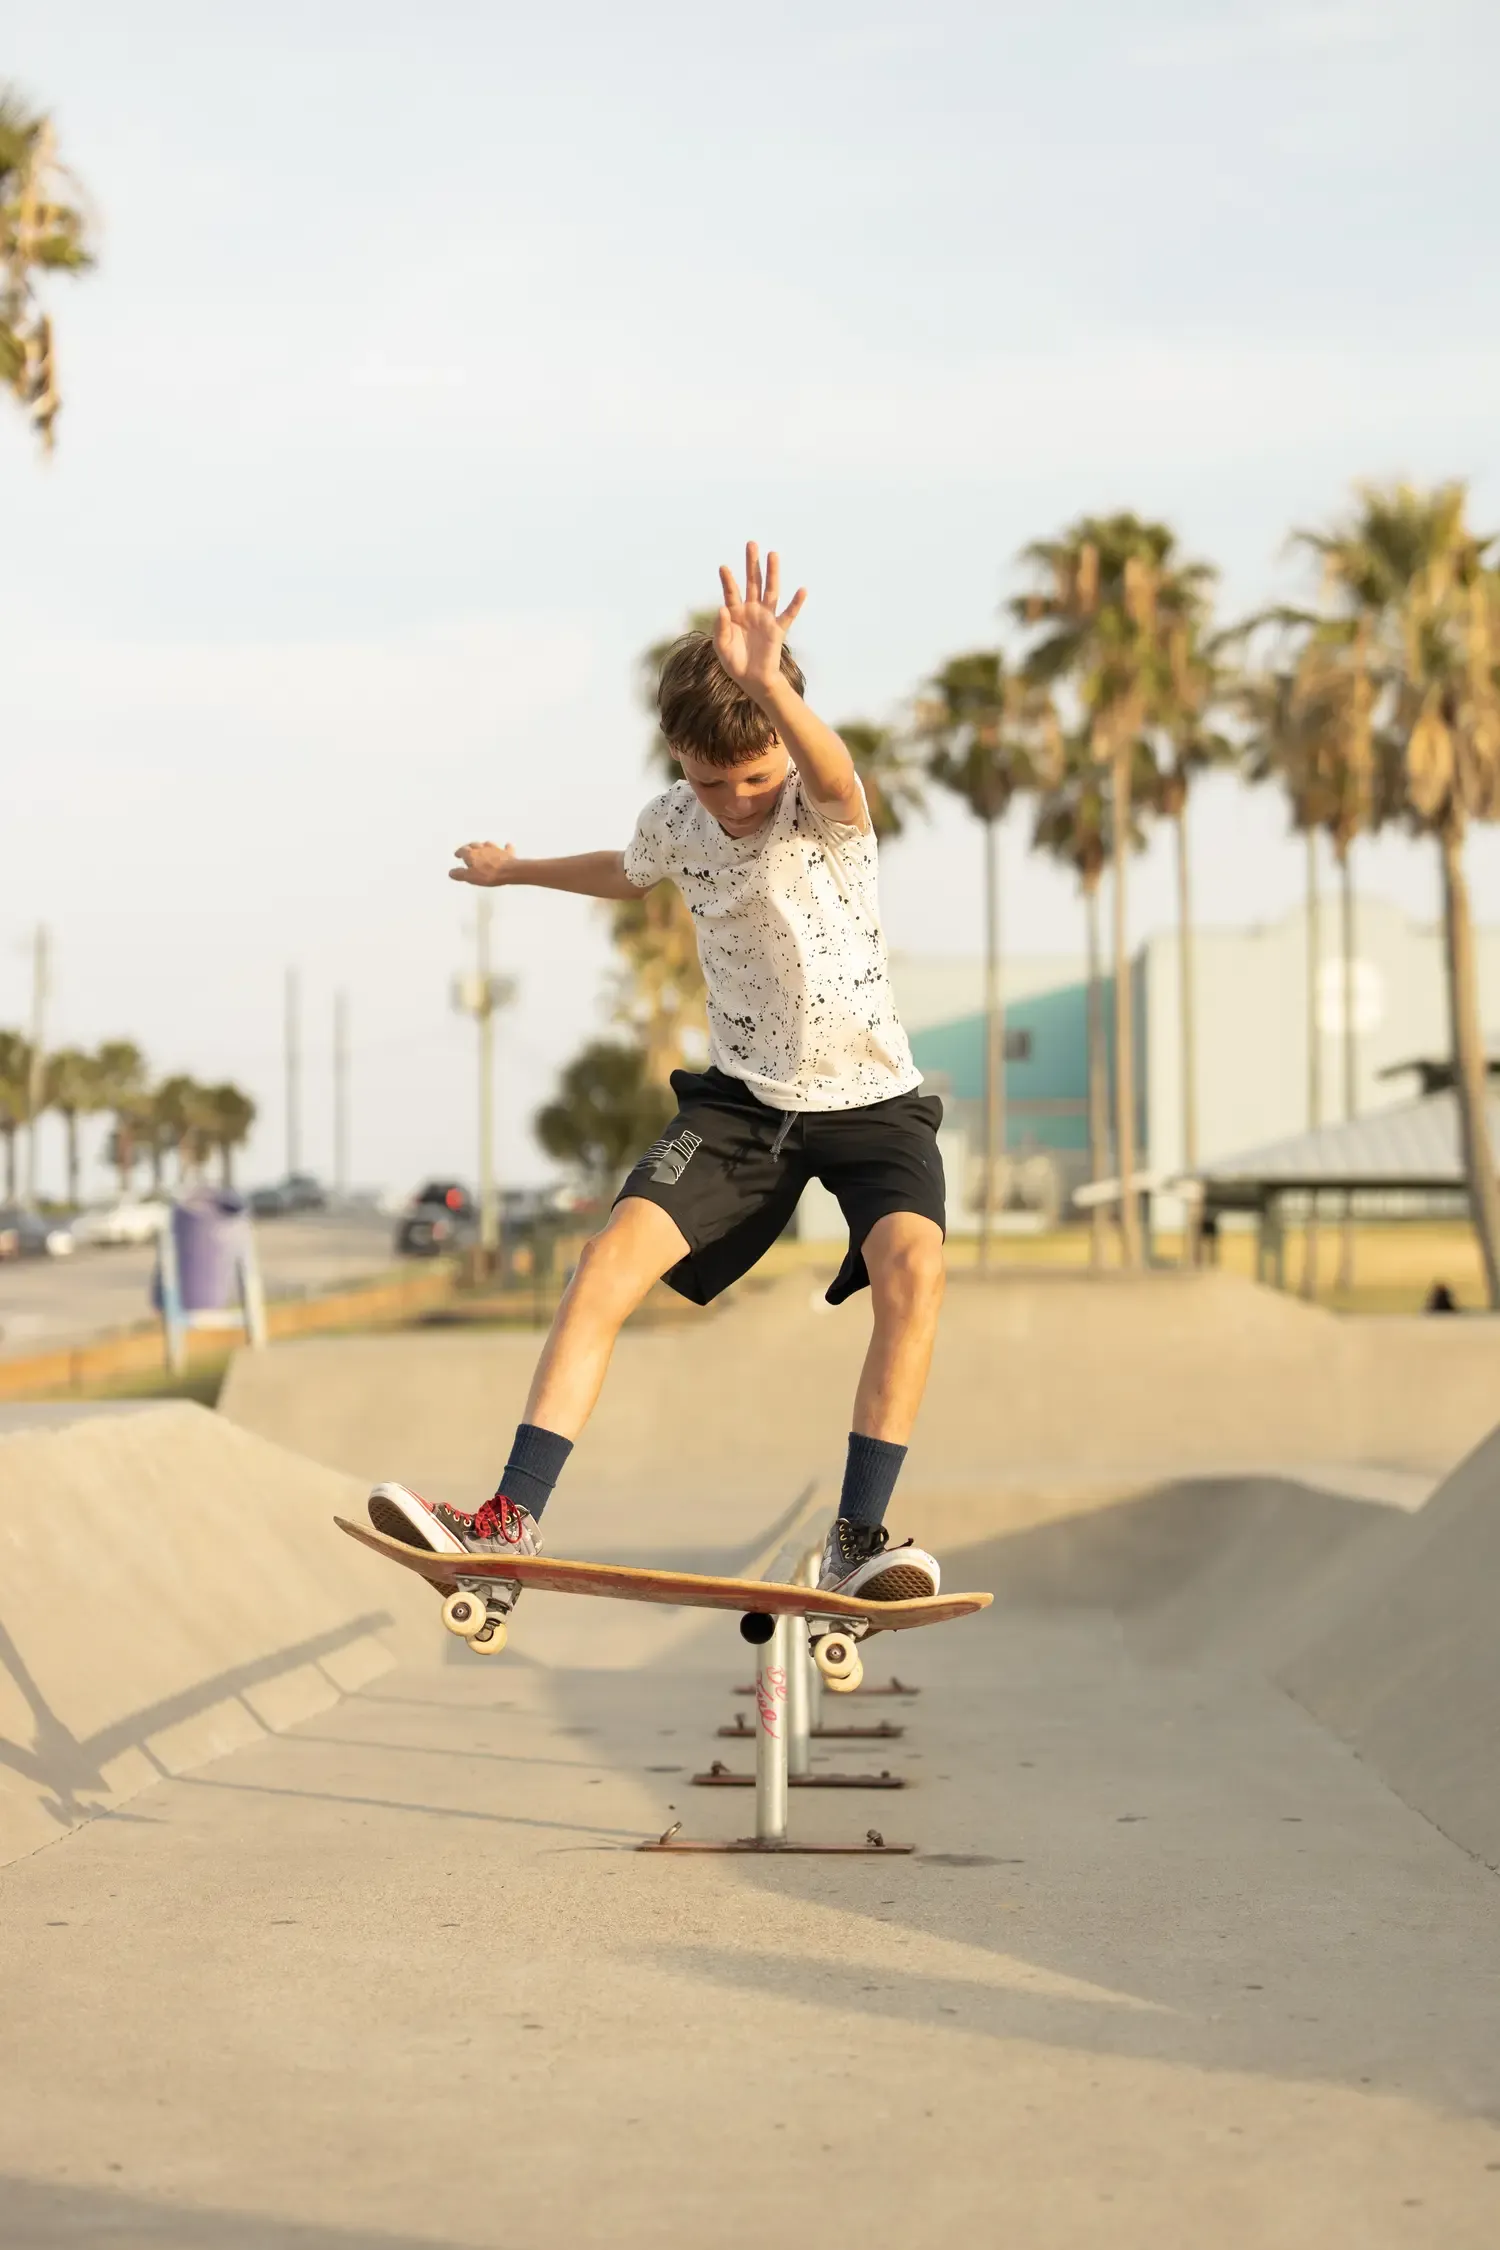 The Best Skateboard For Kids